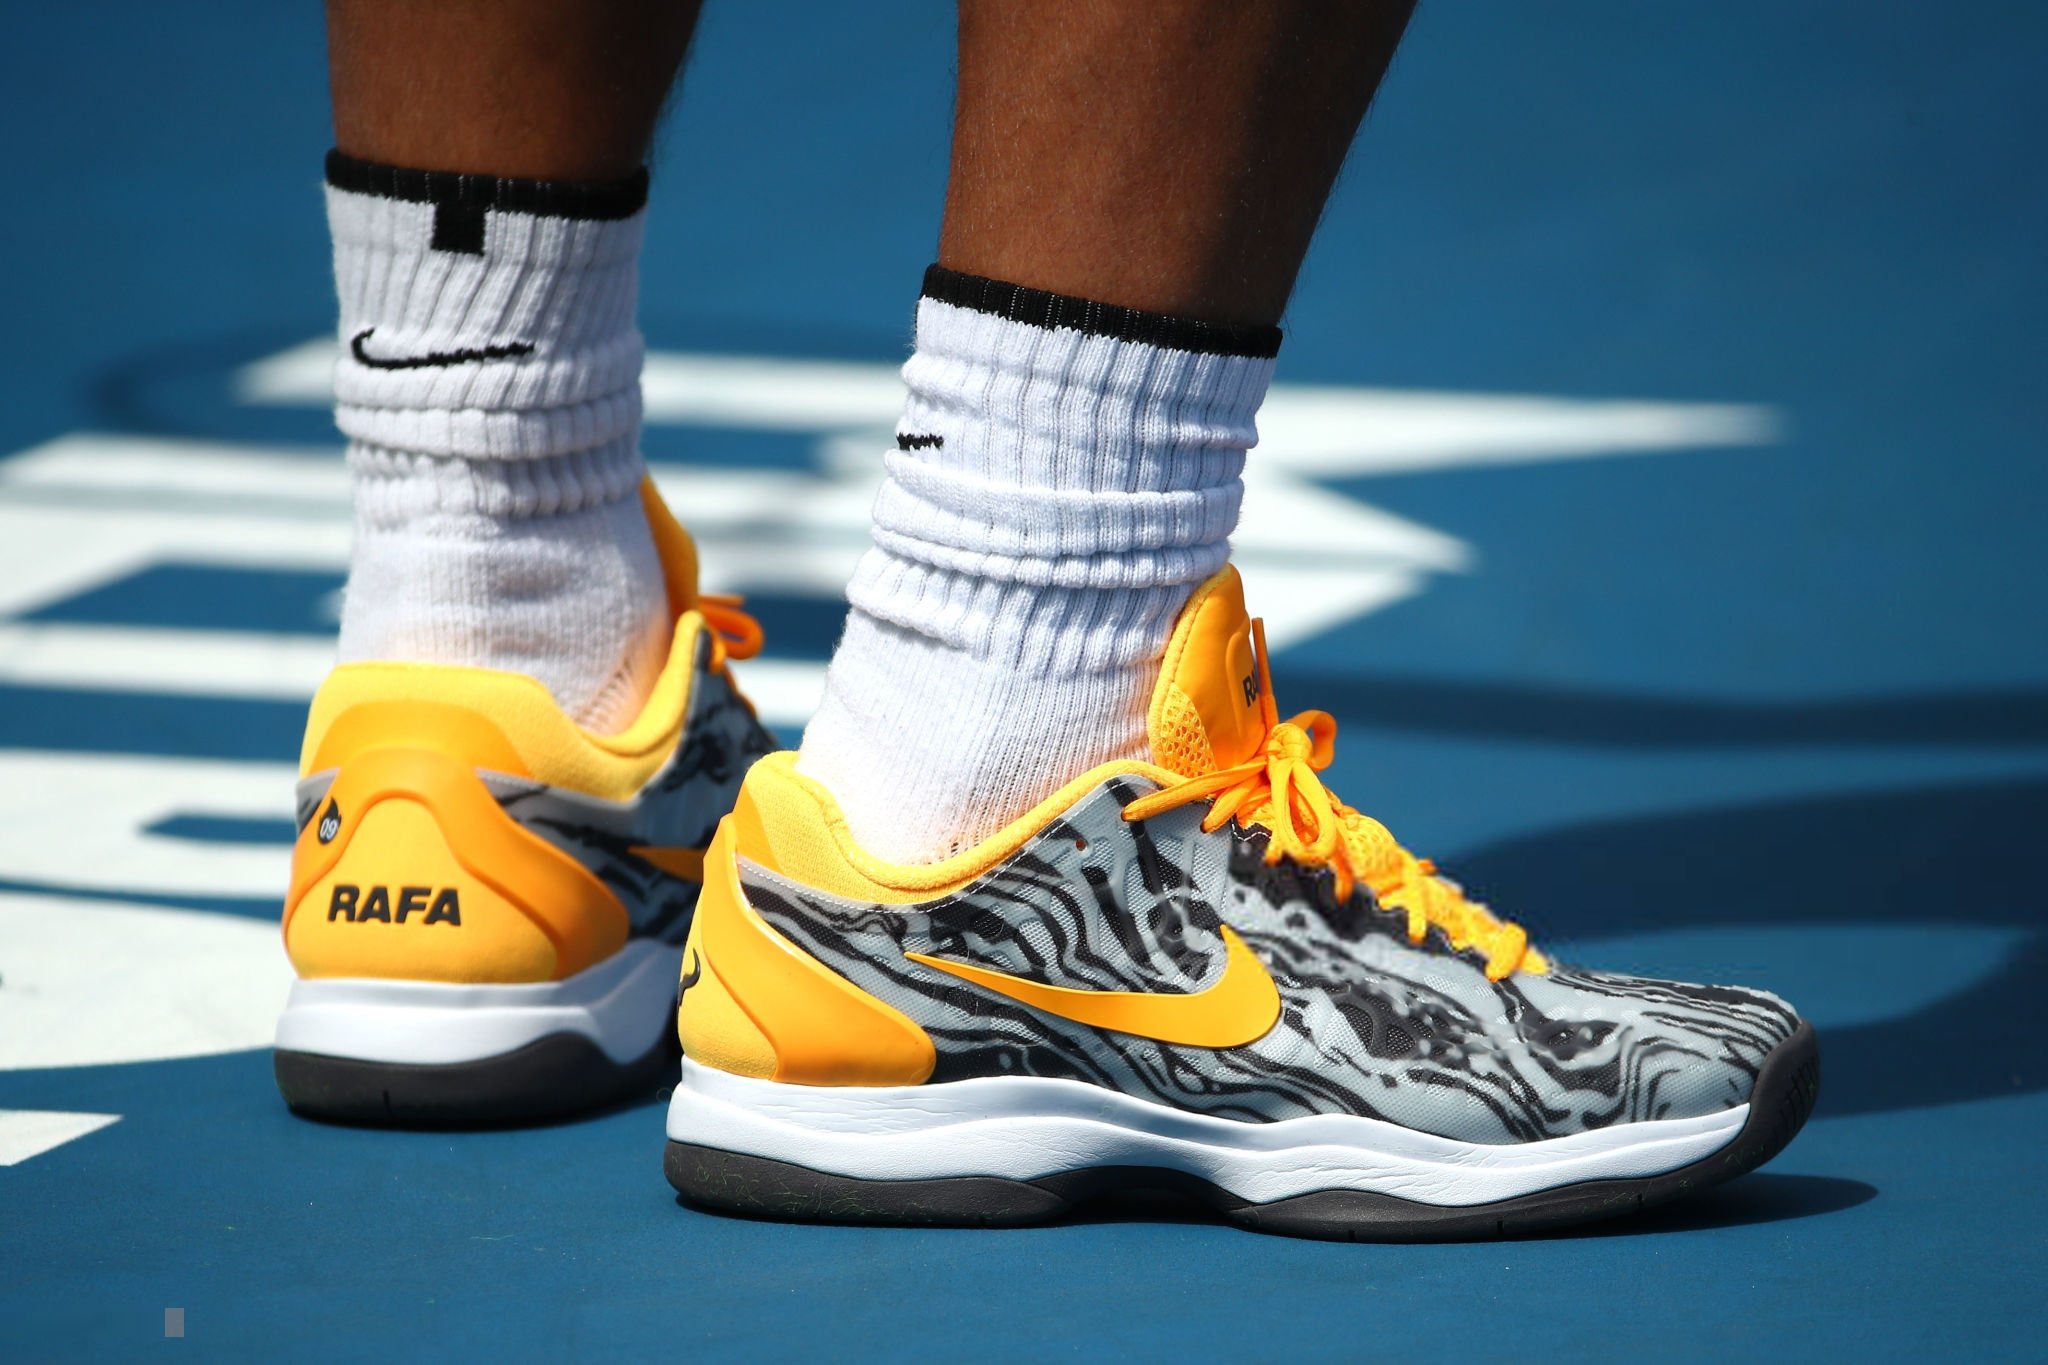 rafael nadal nike shoes australian open 2019 final (1) – Rafael Nadal Fans